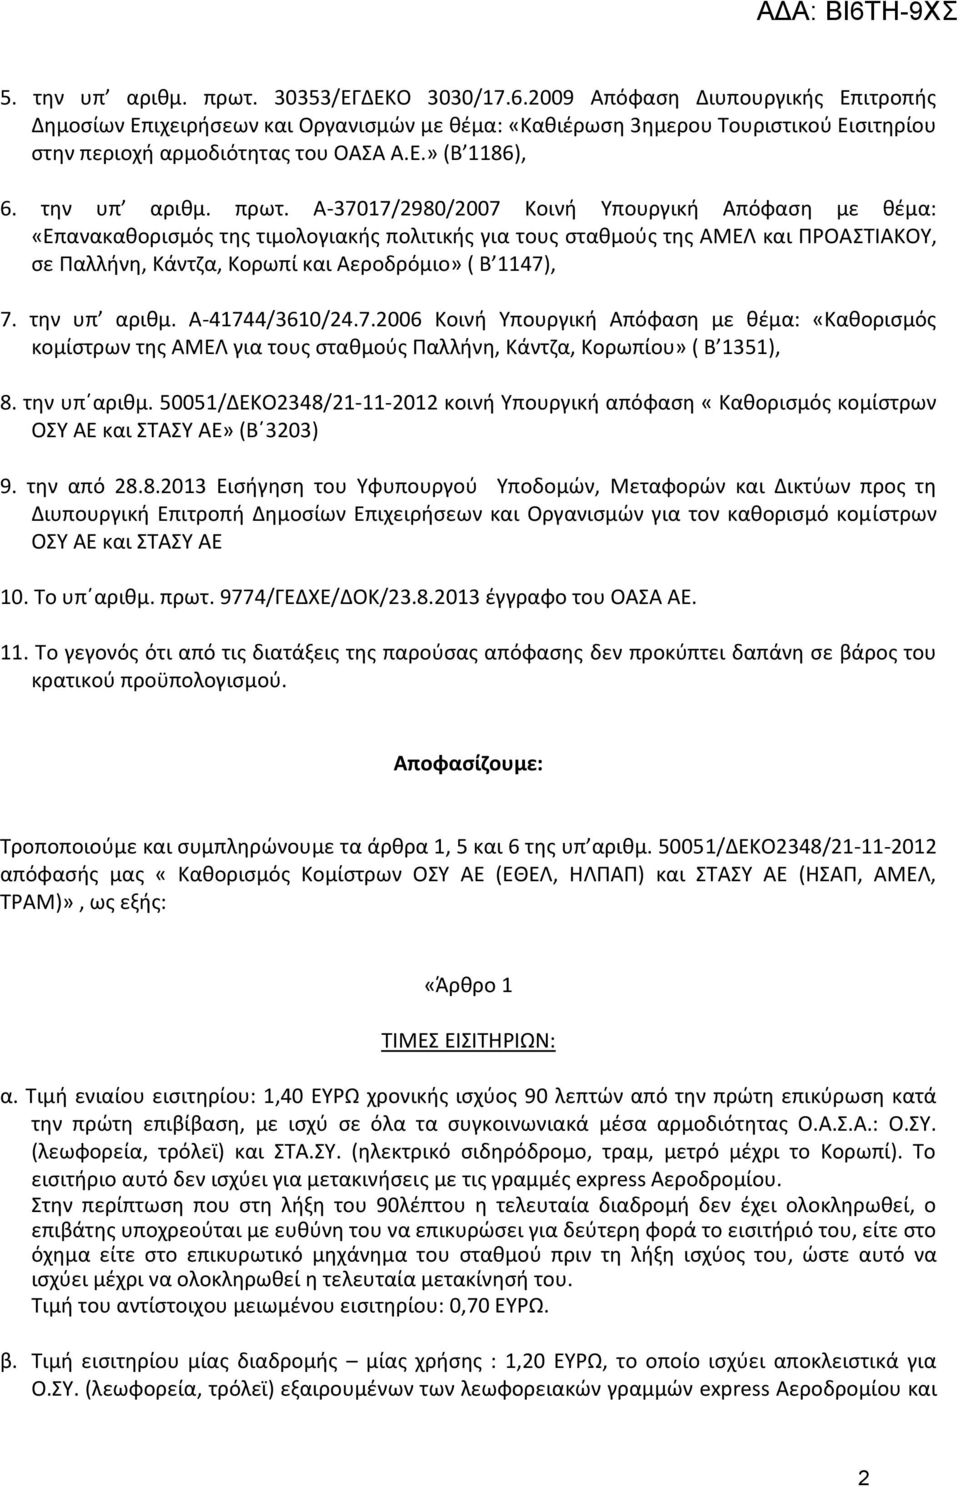 Α-37017/2980/2007 Κοινή Υπουργική Απόφαση με θέμα: «Επανακαθορισμός της τιμολογιακής πολιτικής για τους σταθμούς της ΑΜΕΛ και ΠΡΟΑΣΤΙΑΚΟΥ, σε Παλλήνη, Κάντζα, Κορωπί και Αεροδρόμιο» ( Β 1147), 7.